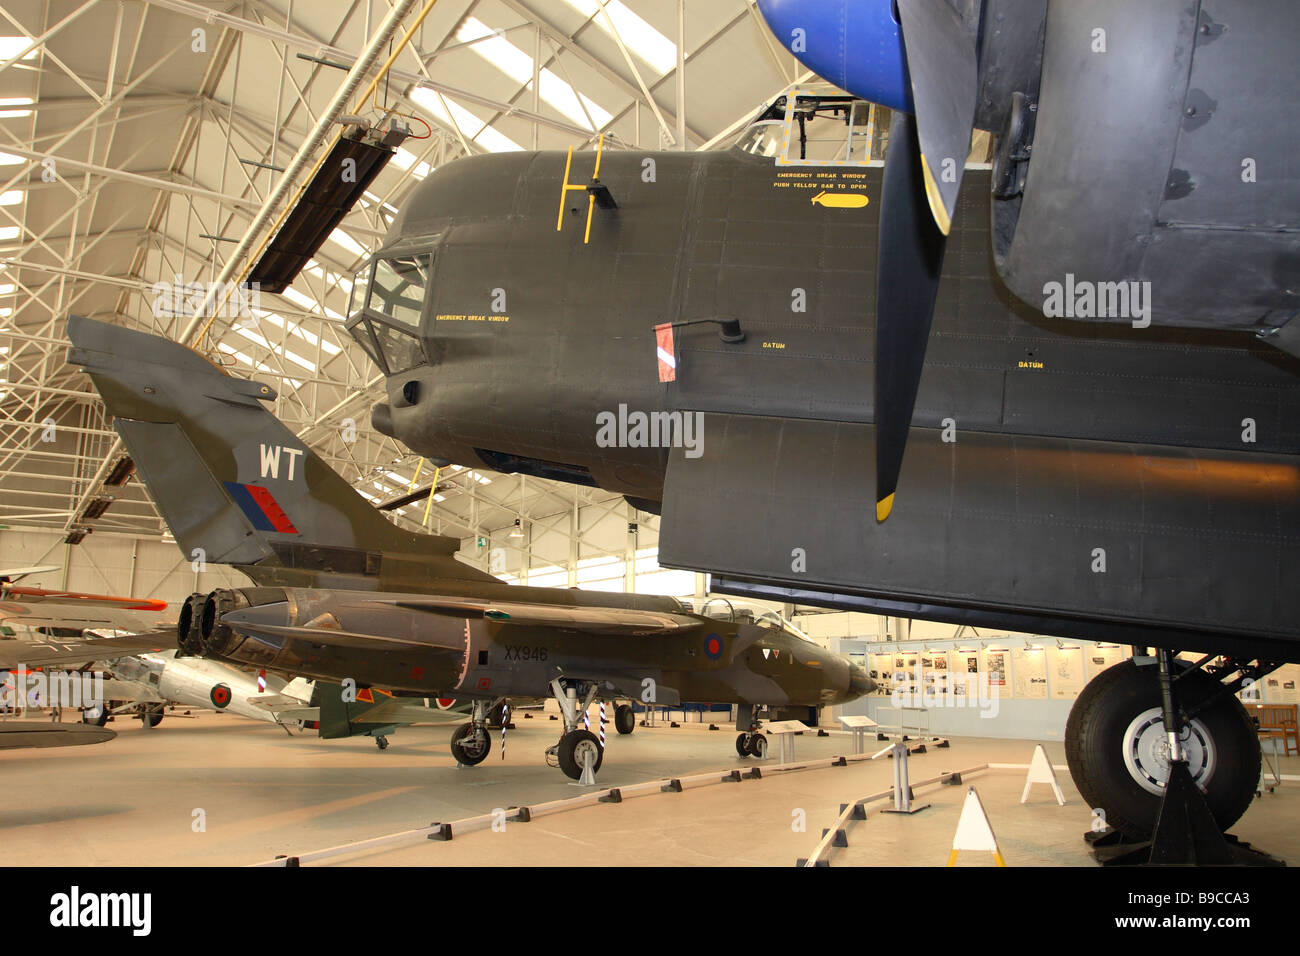 RAF Cosford historische Flugzeuge Museumsausstellung Avro Lincoln Bomber auf der rechten Seite und der modernen Panavia Tornado auf der linken Seite Stockfoto